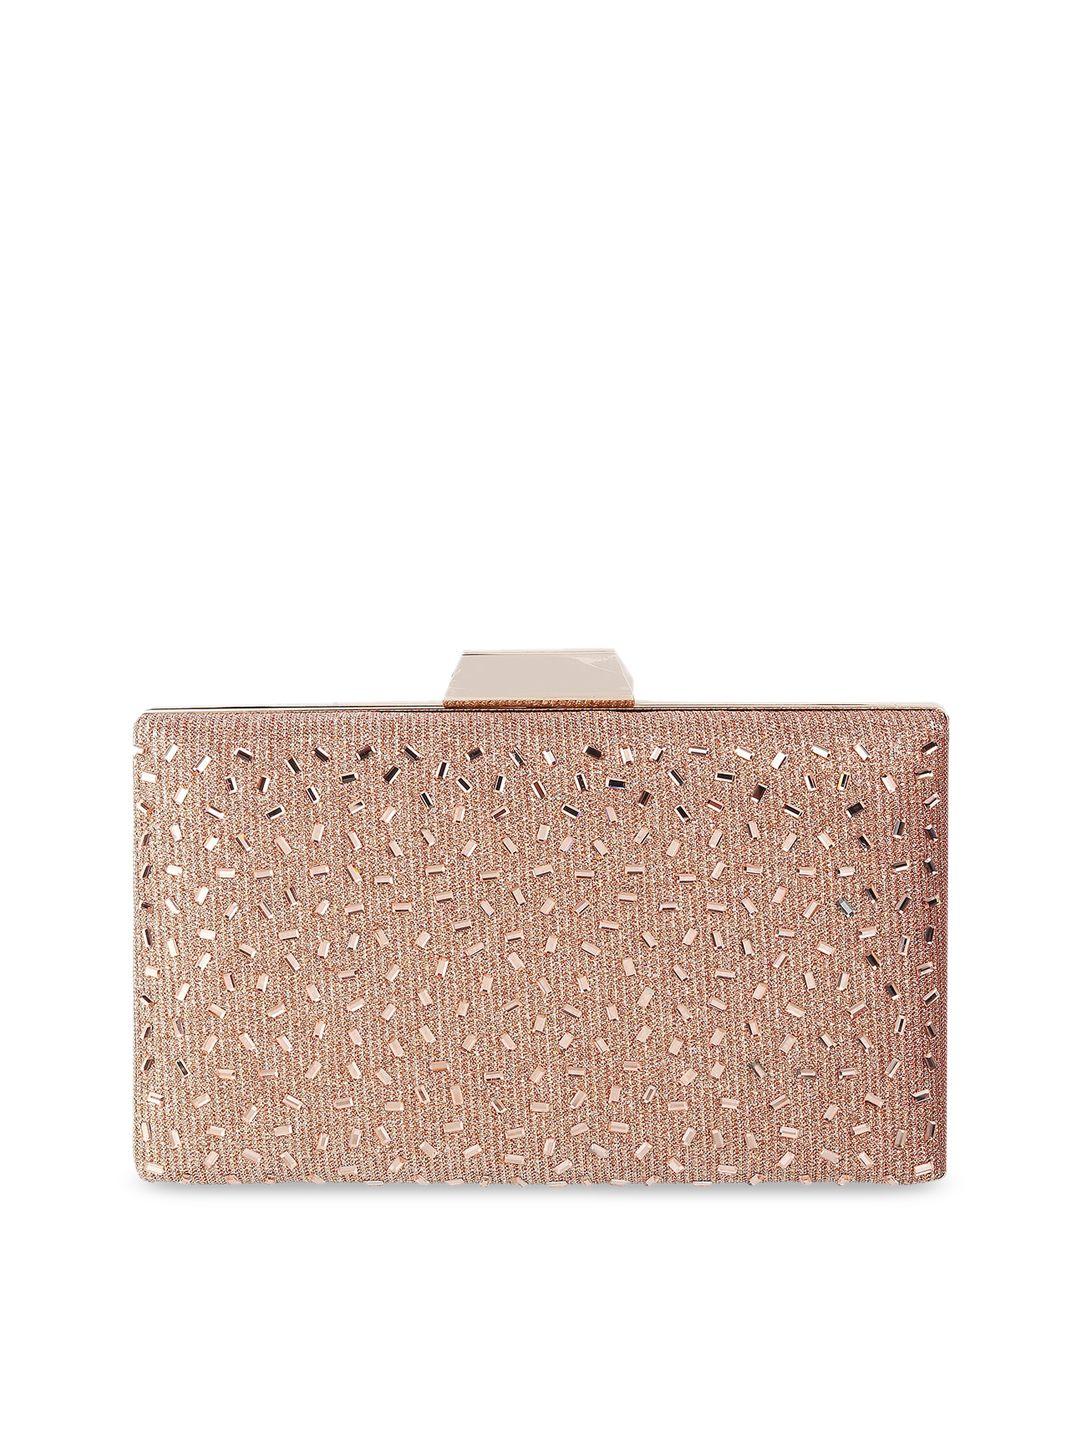 mochi rose gold embellished purse clutch